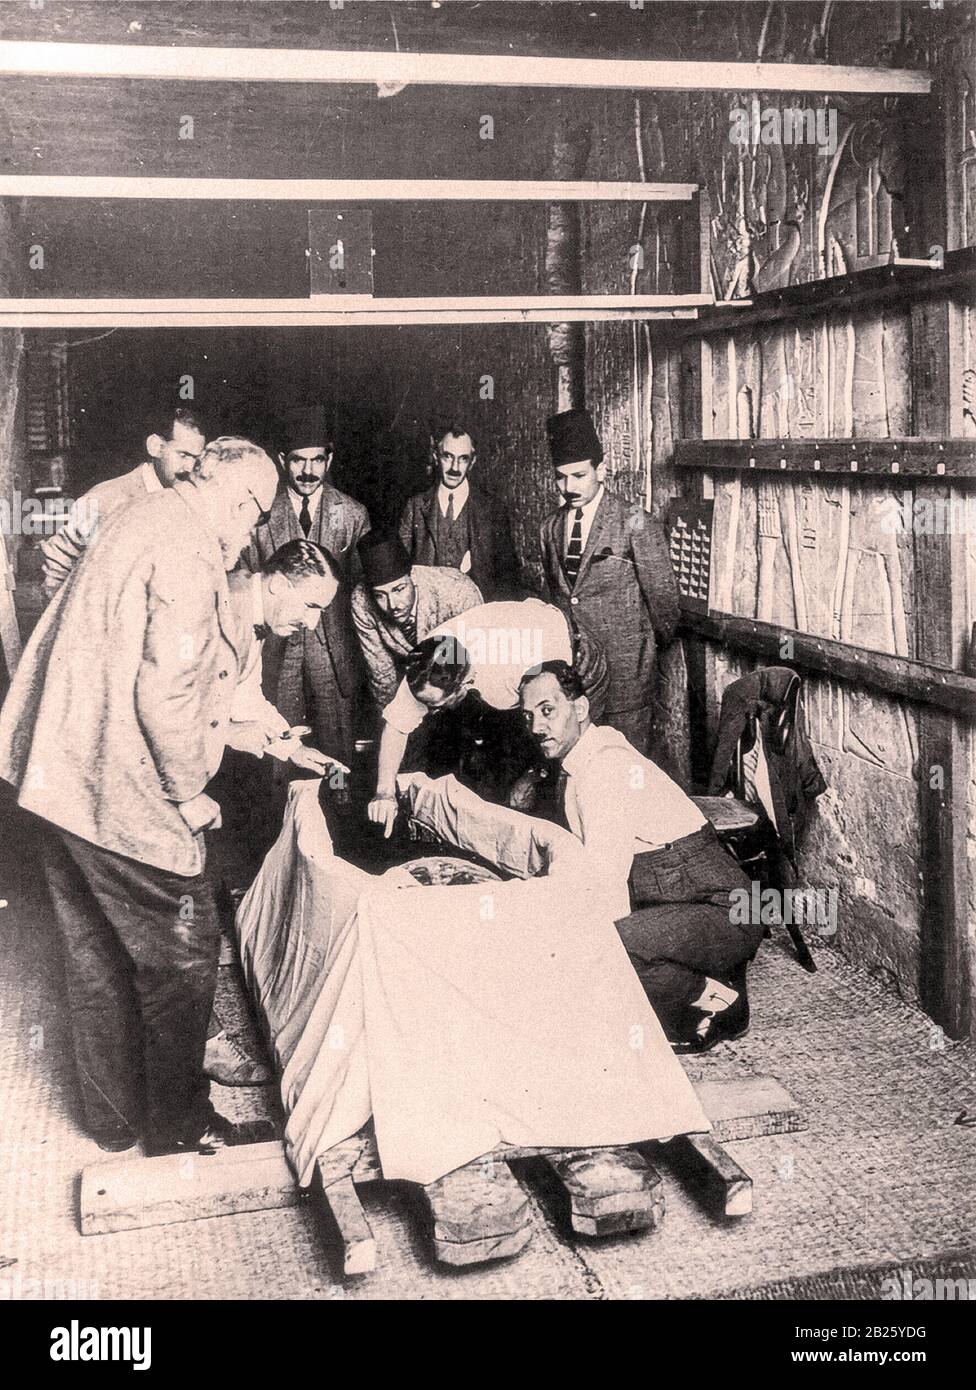 Howard carter, avec loupe, penchant sur la momie du roi Toutankhamun comme la première incision a été faite dans les emballages momie Banque D'Images